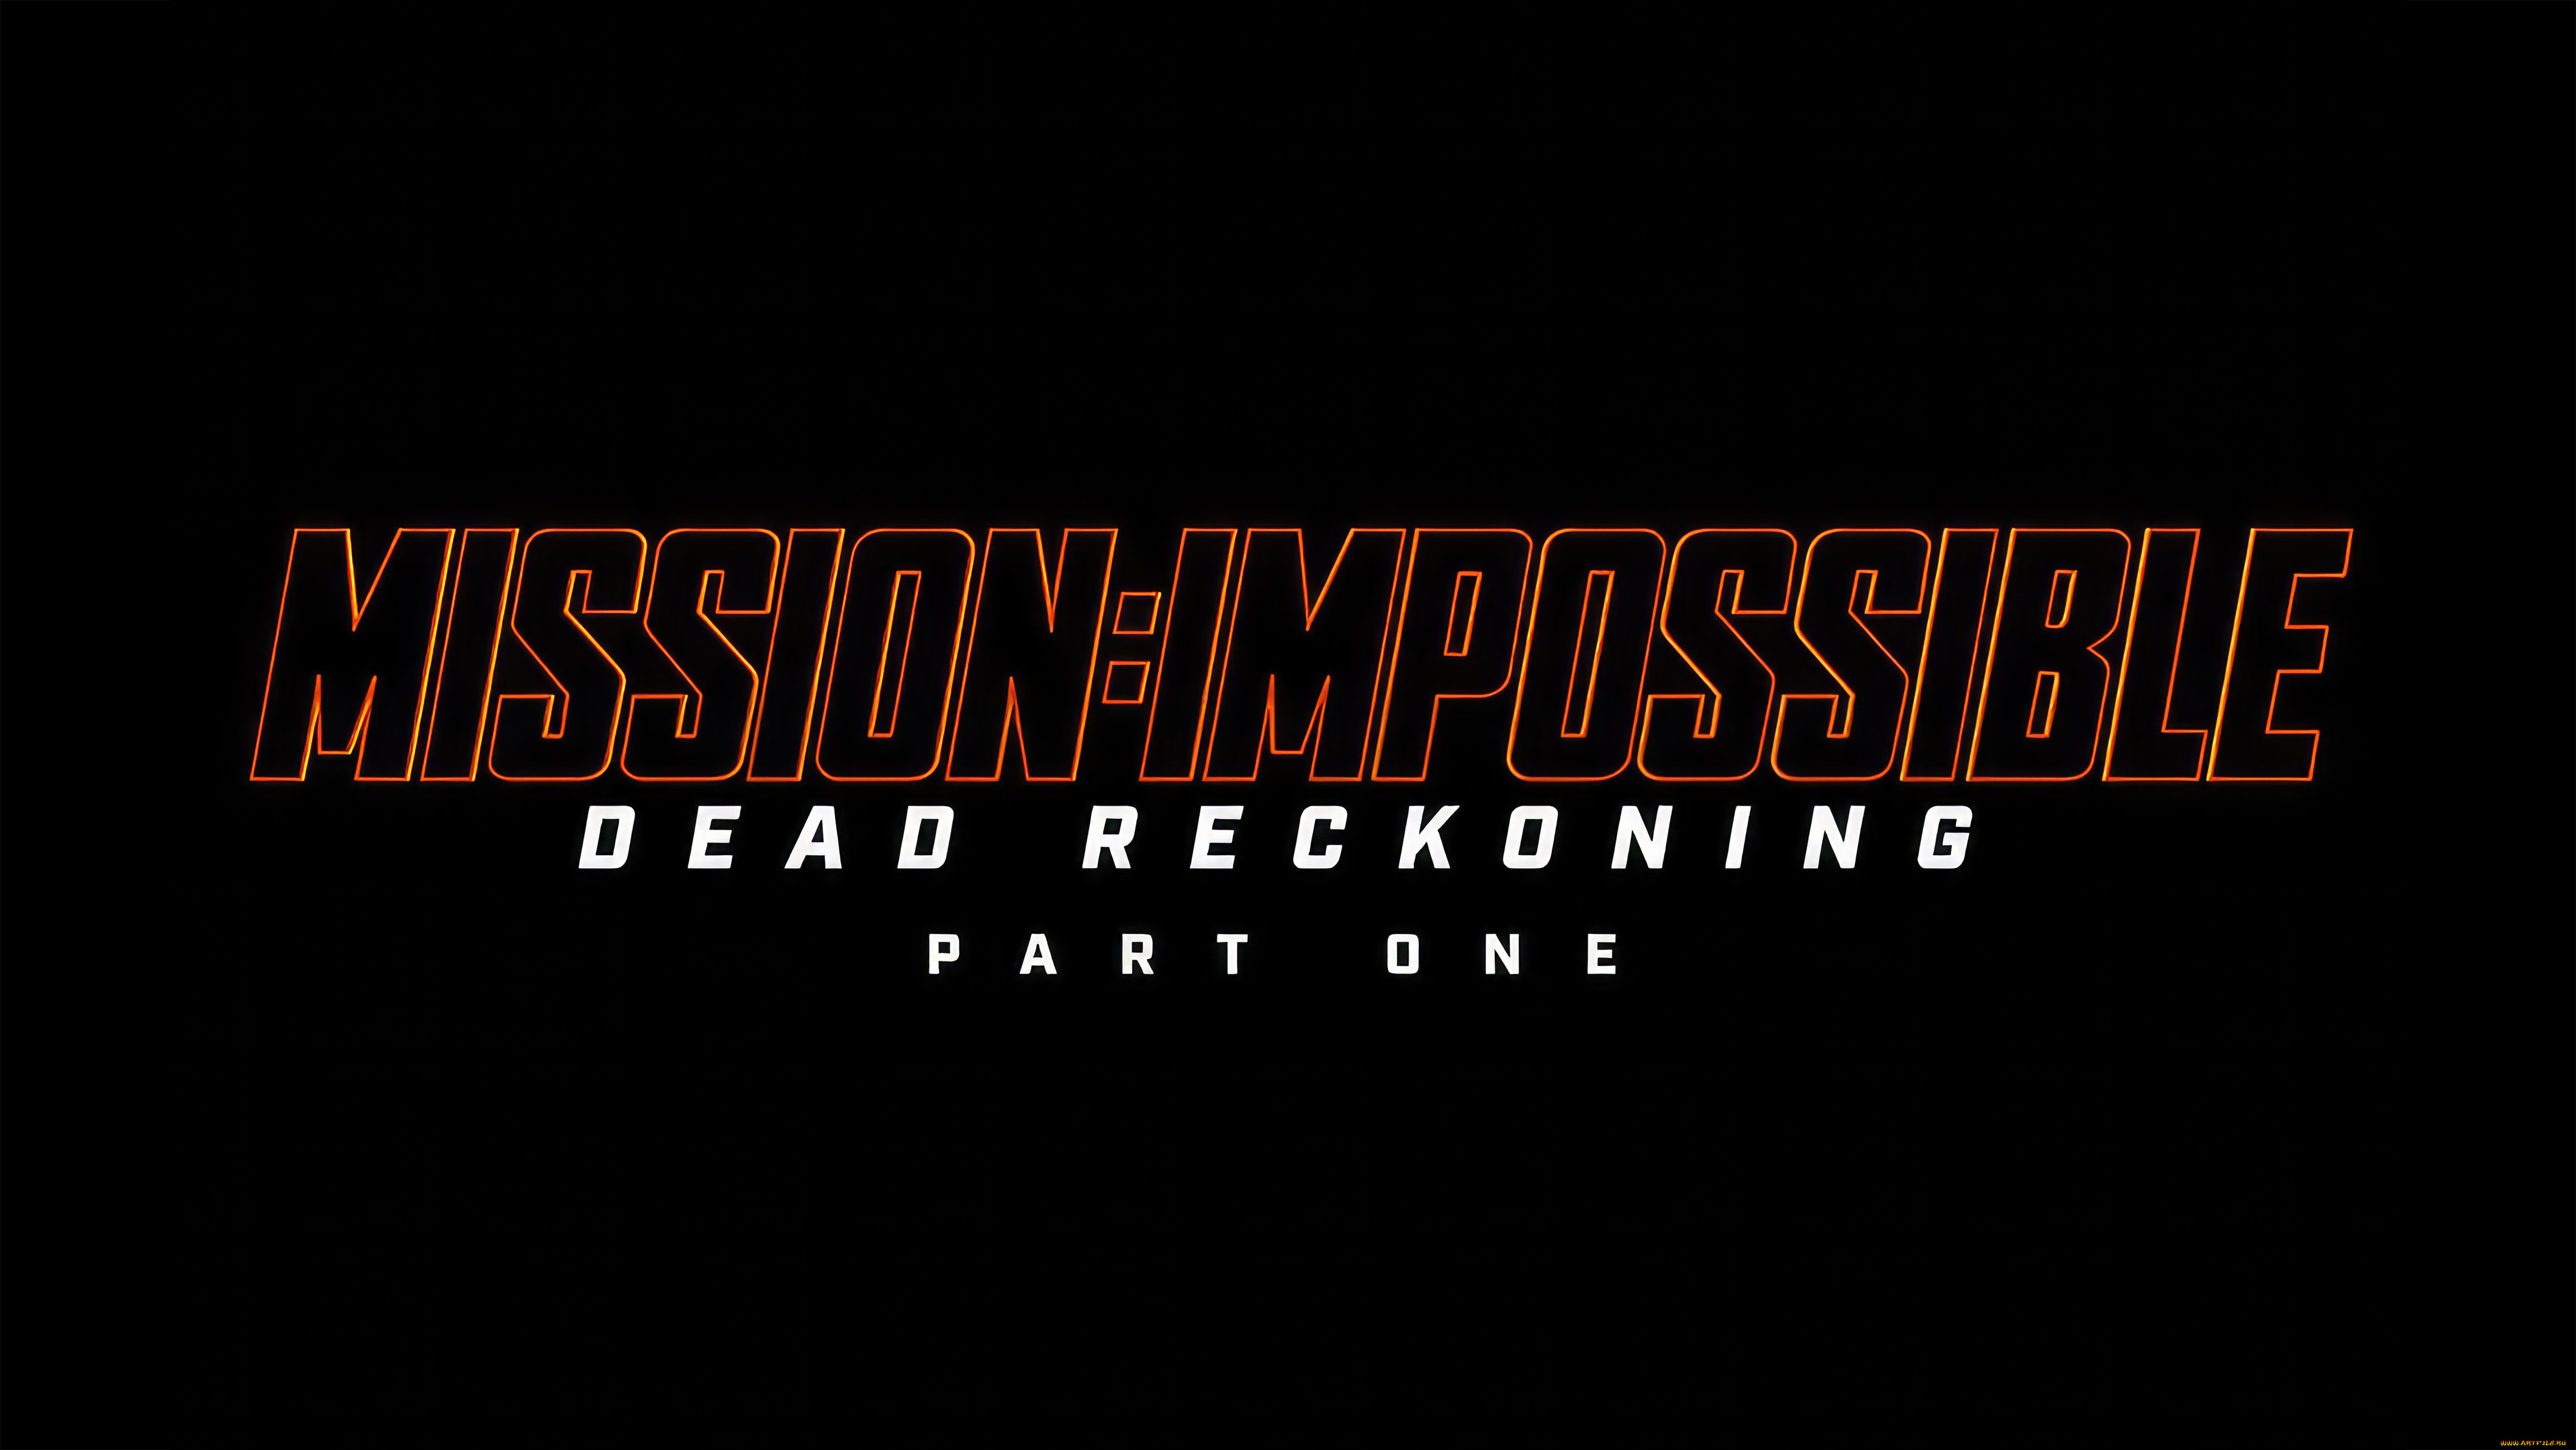 mission, , impossible, -, dead, reckoning, part, one, , , 2023, , кино, фильмы, -unknown, , другое, миссия, невыполнима, смертельная, расплата, первая, часть, боевик, триллер, impossible, dead, reckoning, part, one